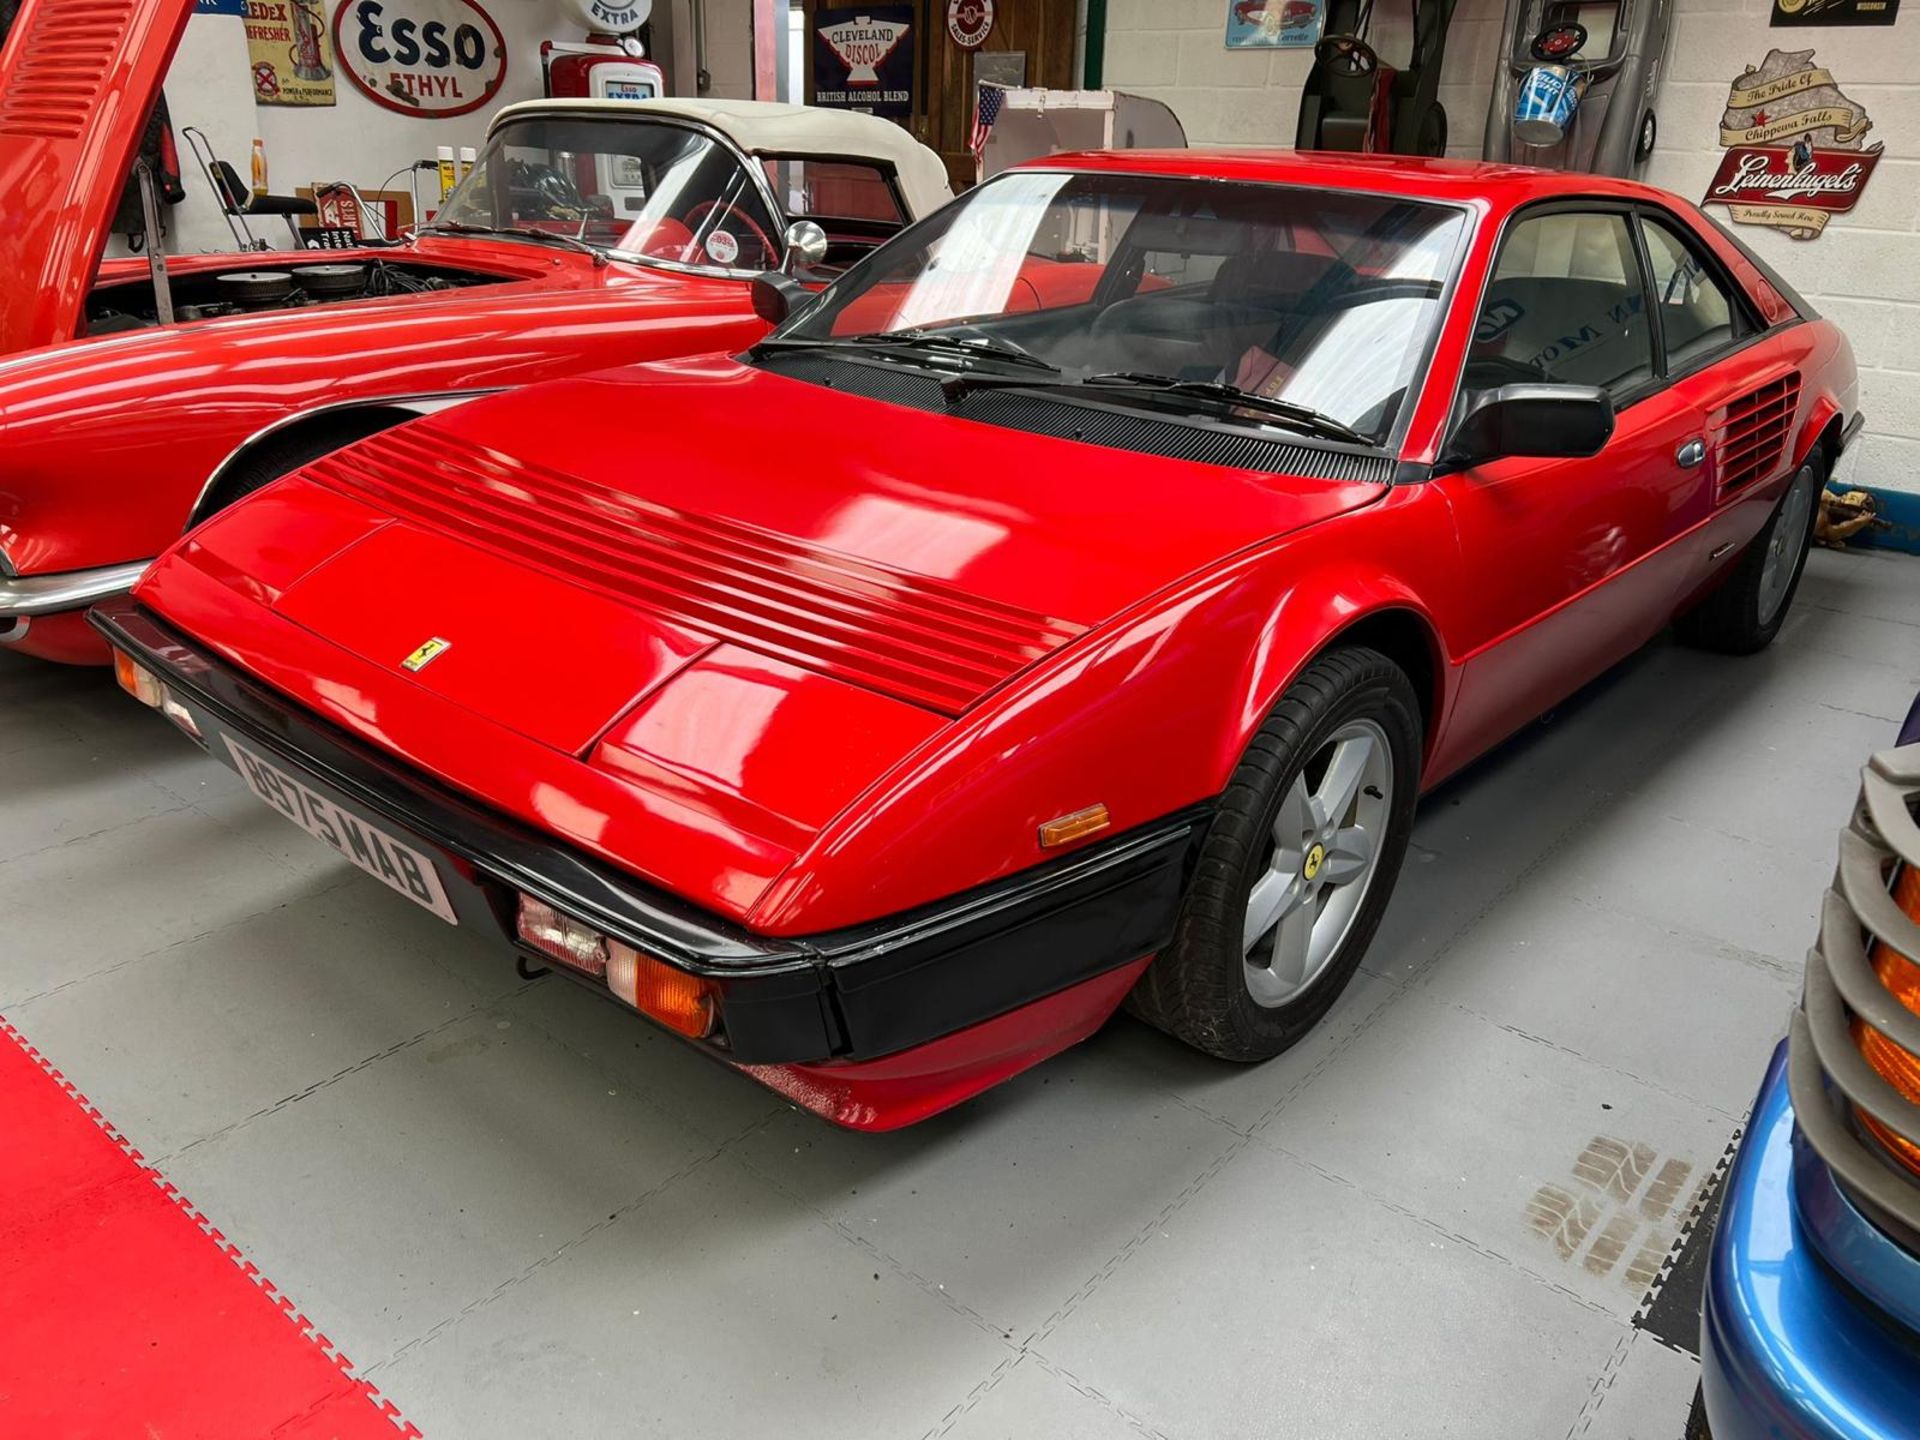 Ferrari Mondial Quattrovalvole Coupe 1984 - Image 15 of 30